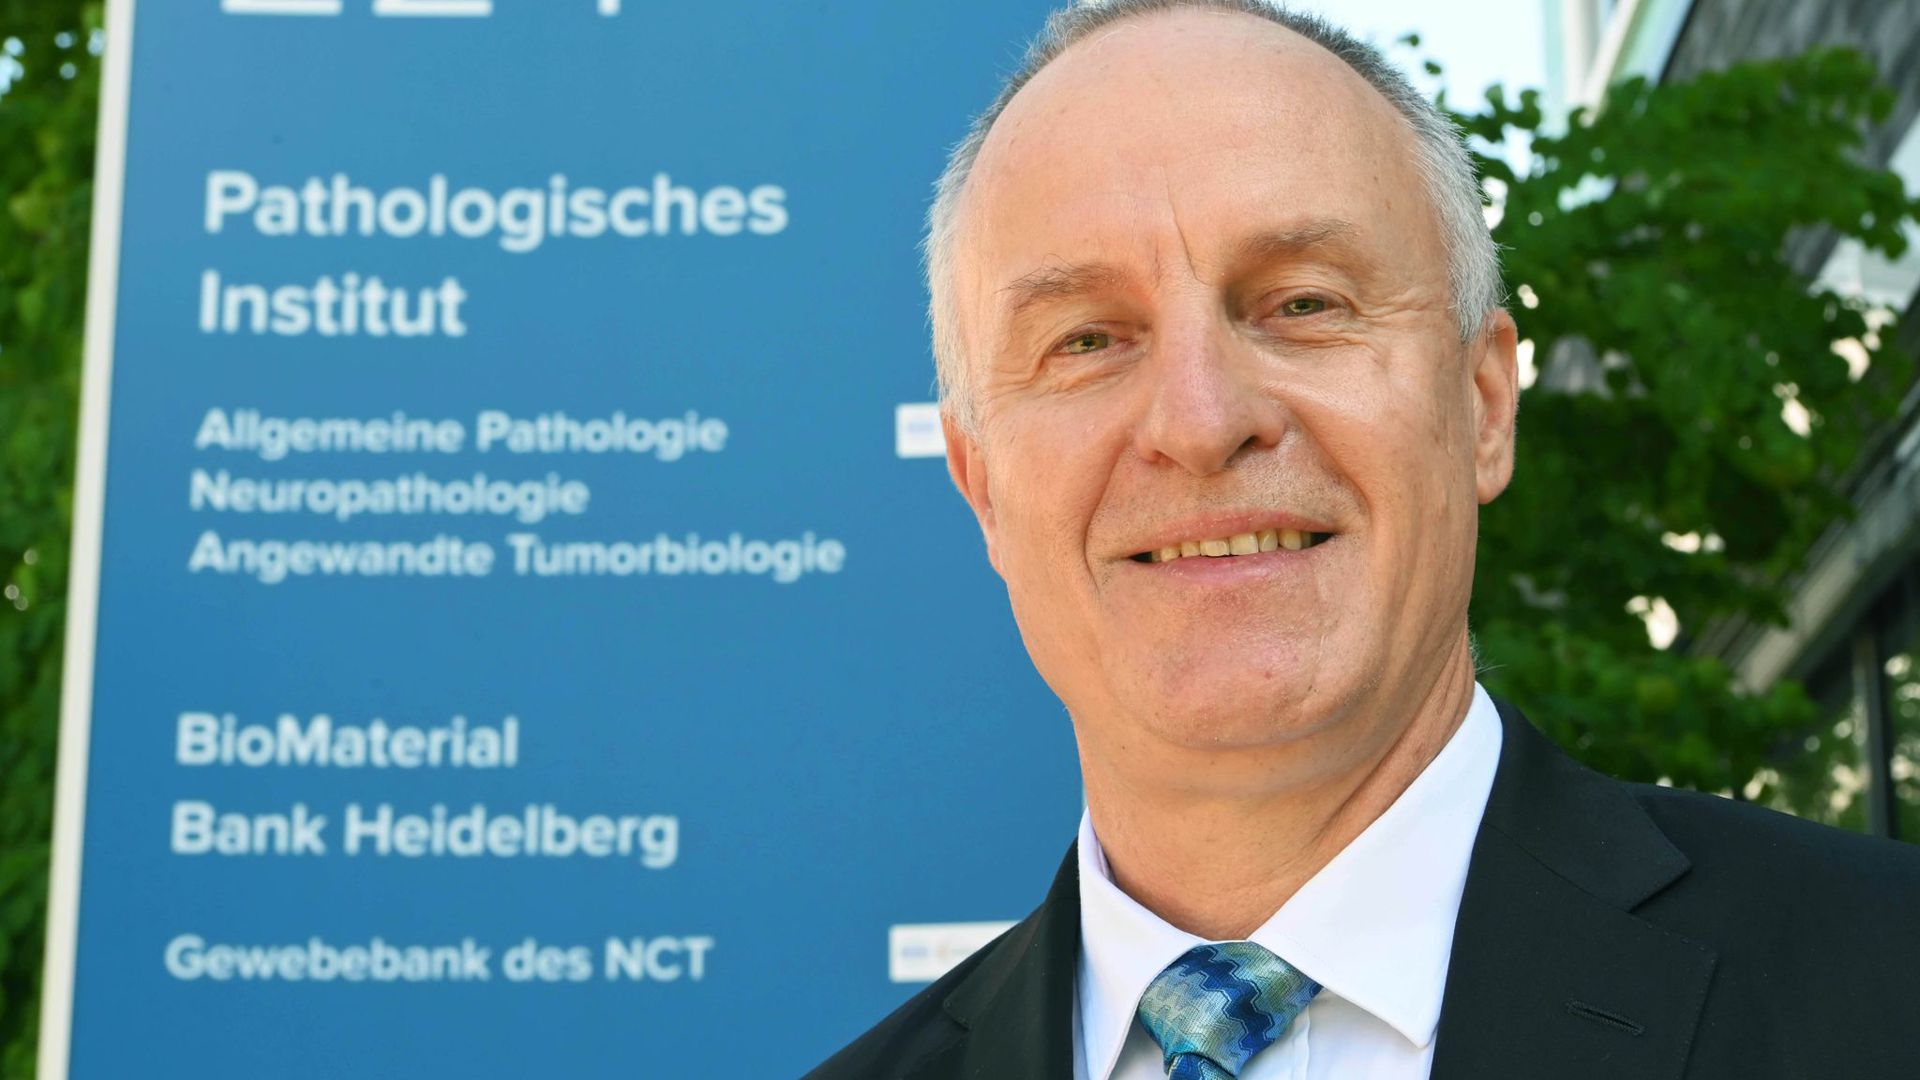 Peter Schirmacher, Geschäftsführender Direktor des Pathologischen Instituts am Universitätsklinikum Heidelberg.